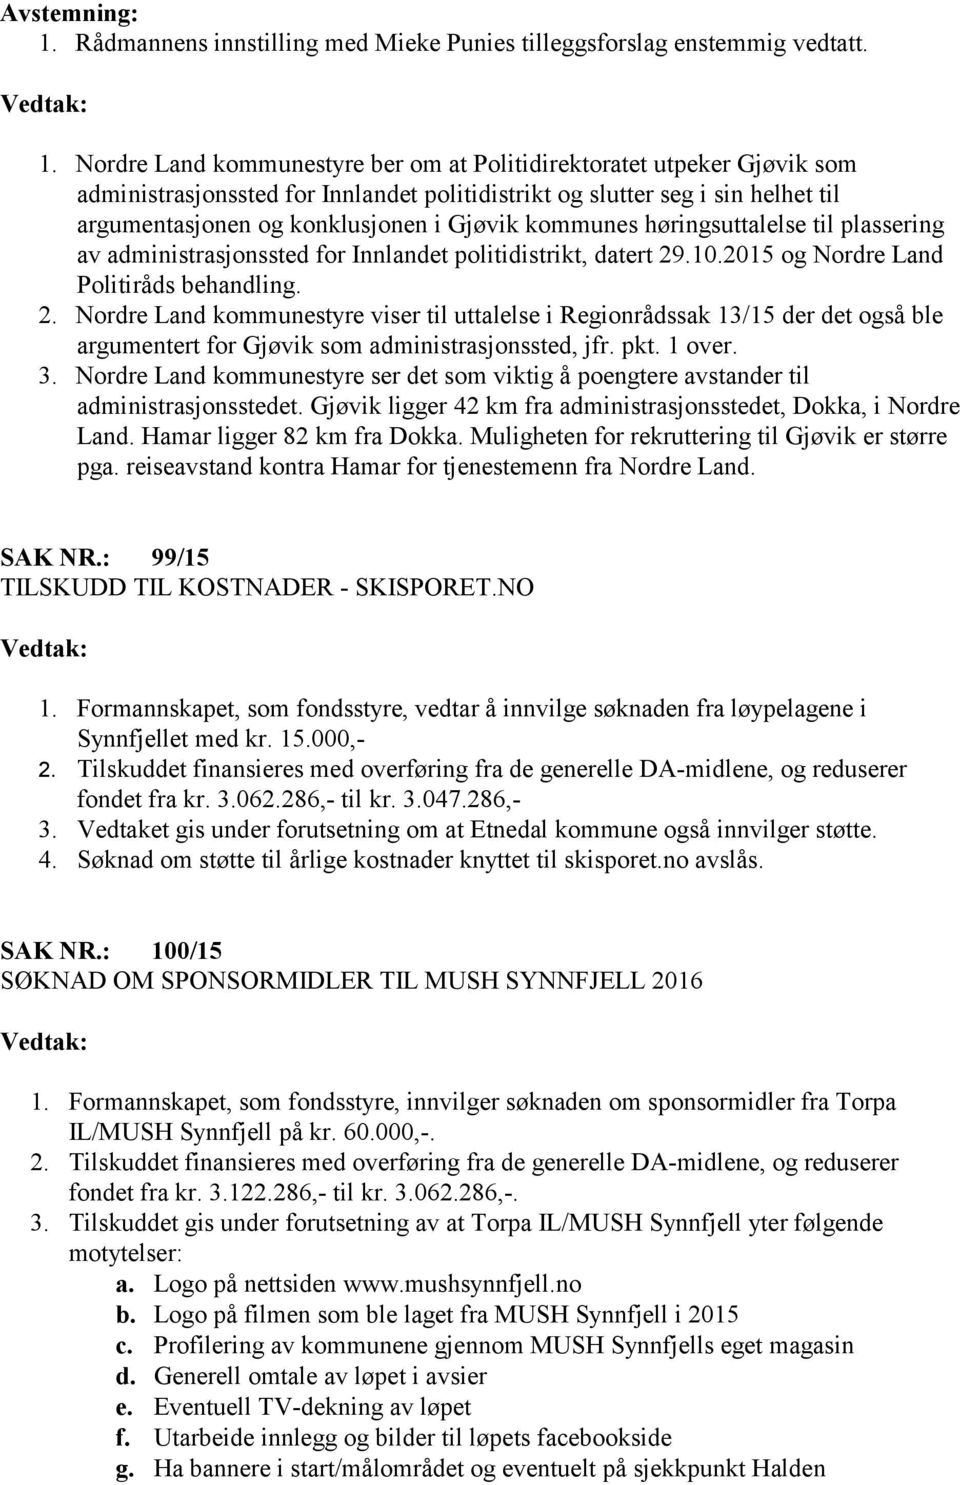 Nordre Land kommunestyre ber om at Politidirektoratet utpeker Gjøvik som administrasjonssted for Innlandet politidistrikt og slutter seg i sin helhet til argumentasjonen og konklusjonen i Gjøvik